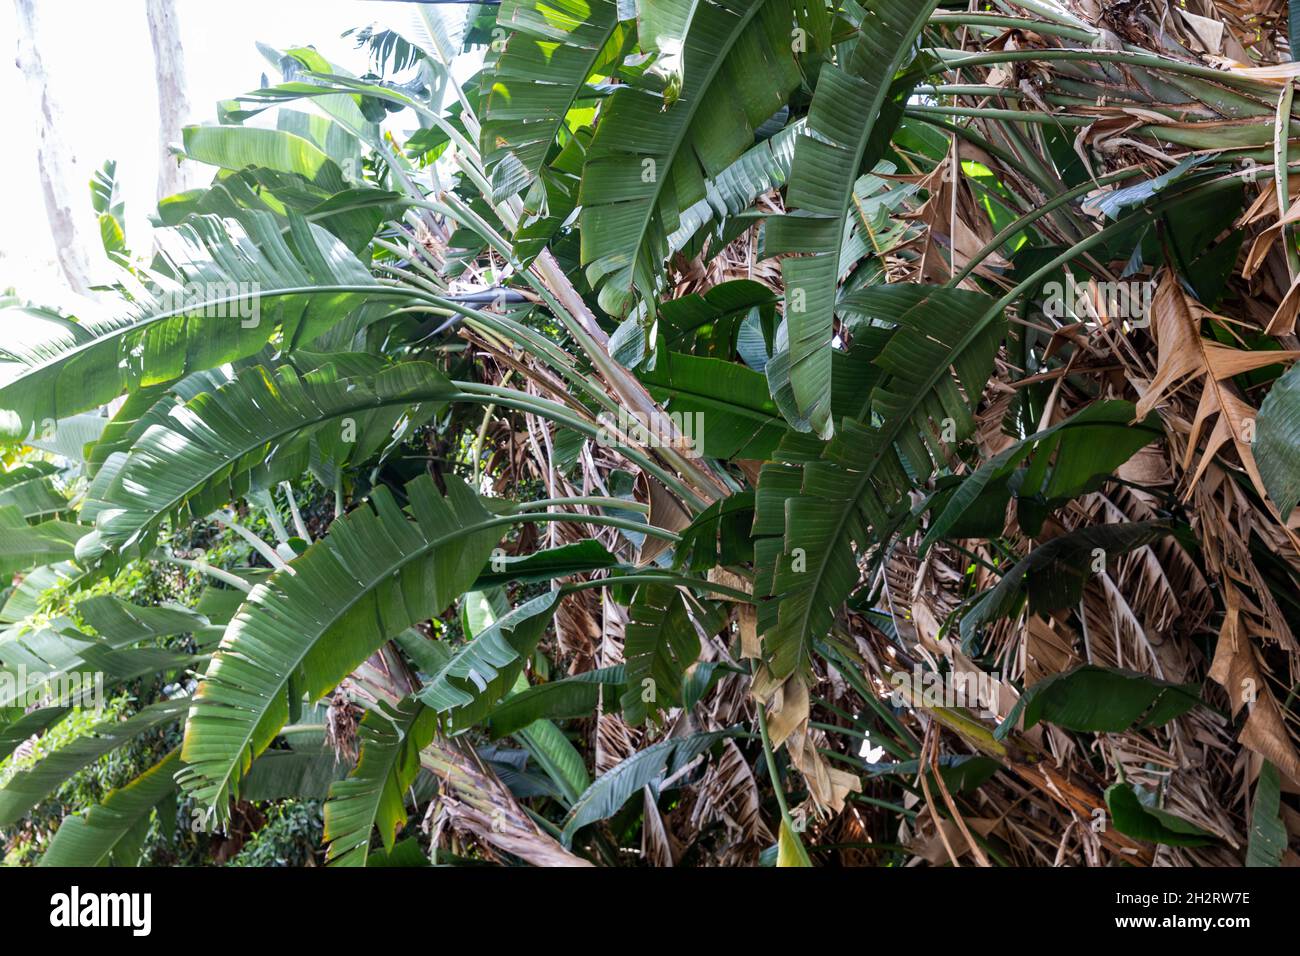 Riesenvögel des Paradieses oder wilde Bananenpflanze, strelitzia nicolai, in einem Sydney Garten, NSW, Australien an einem Frühlingstag Stockfoto